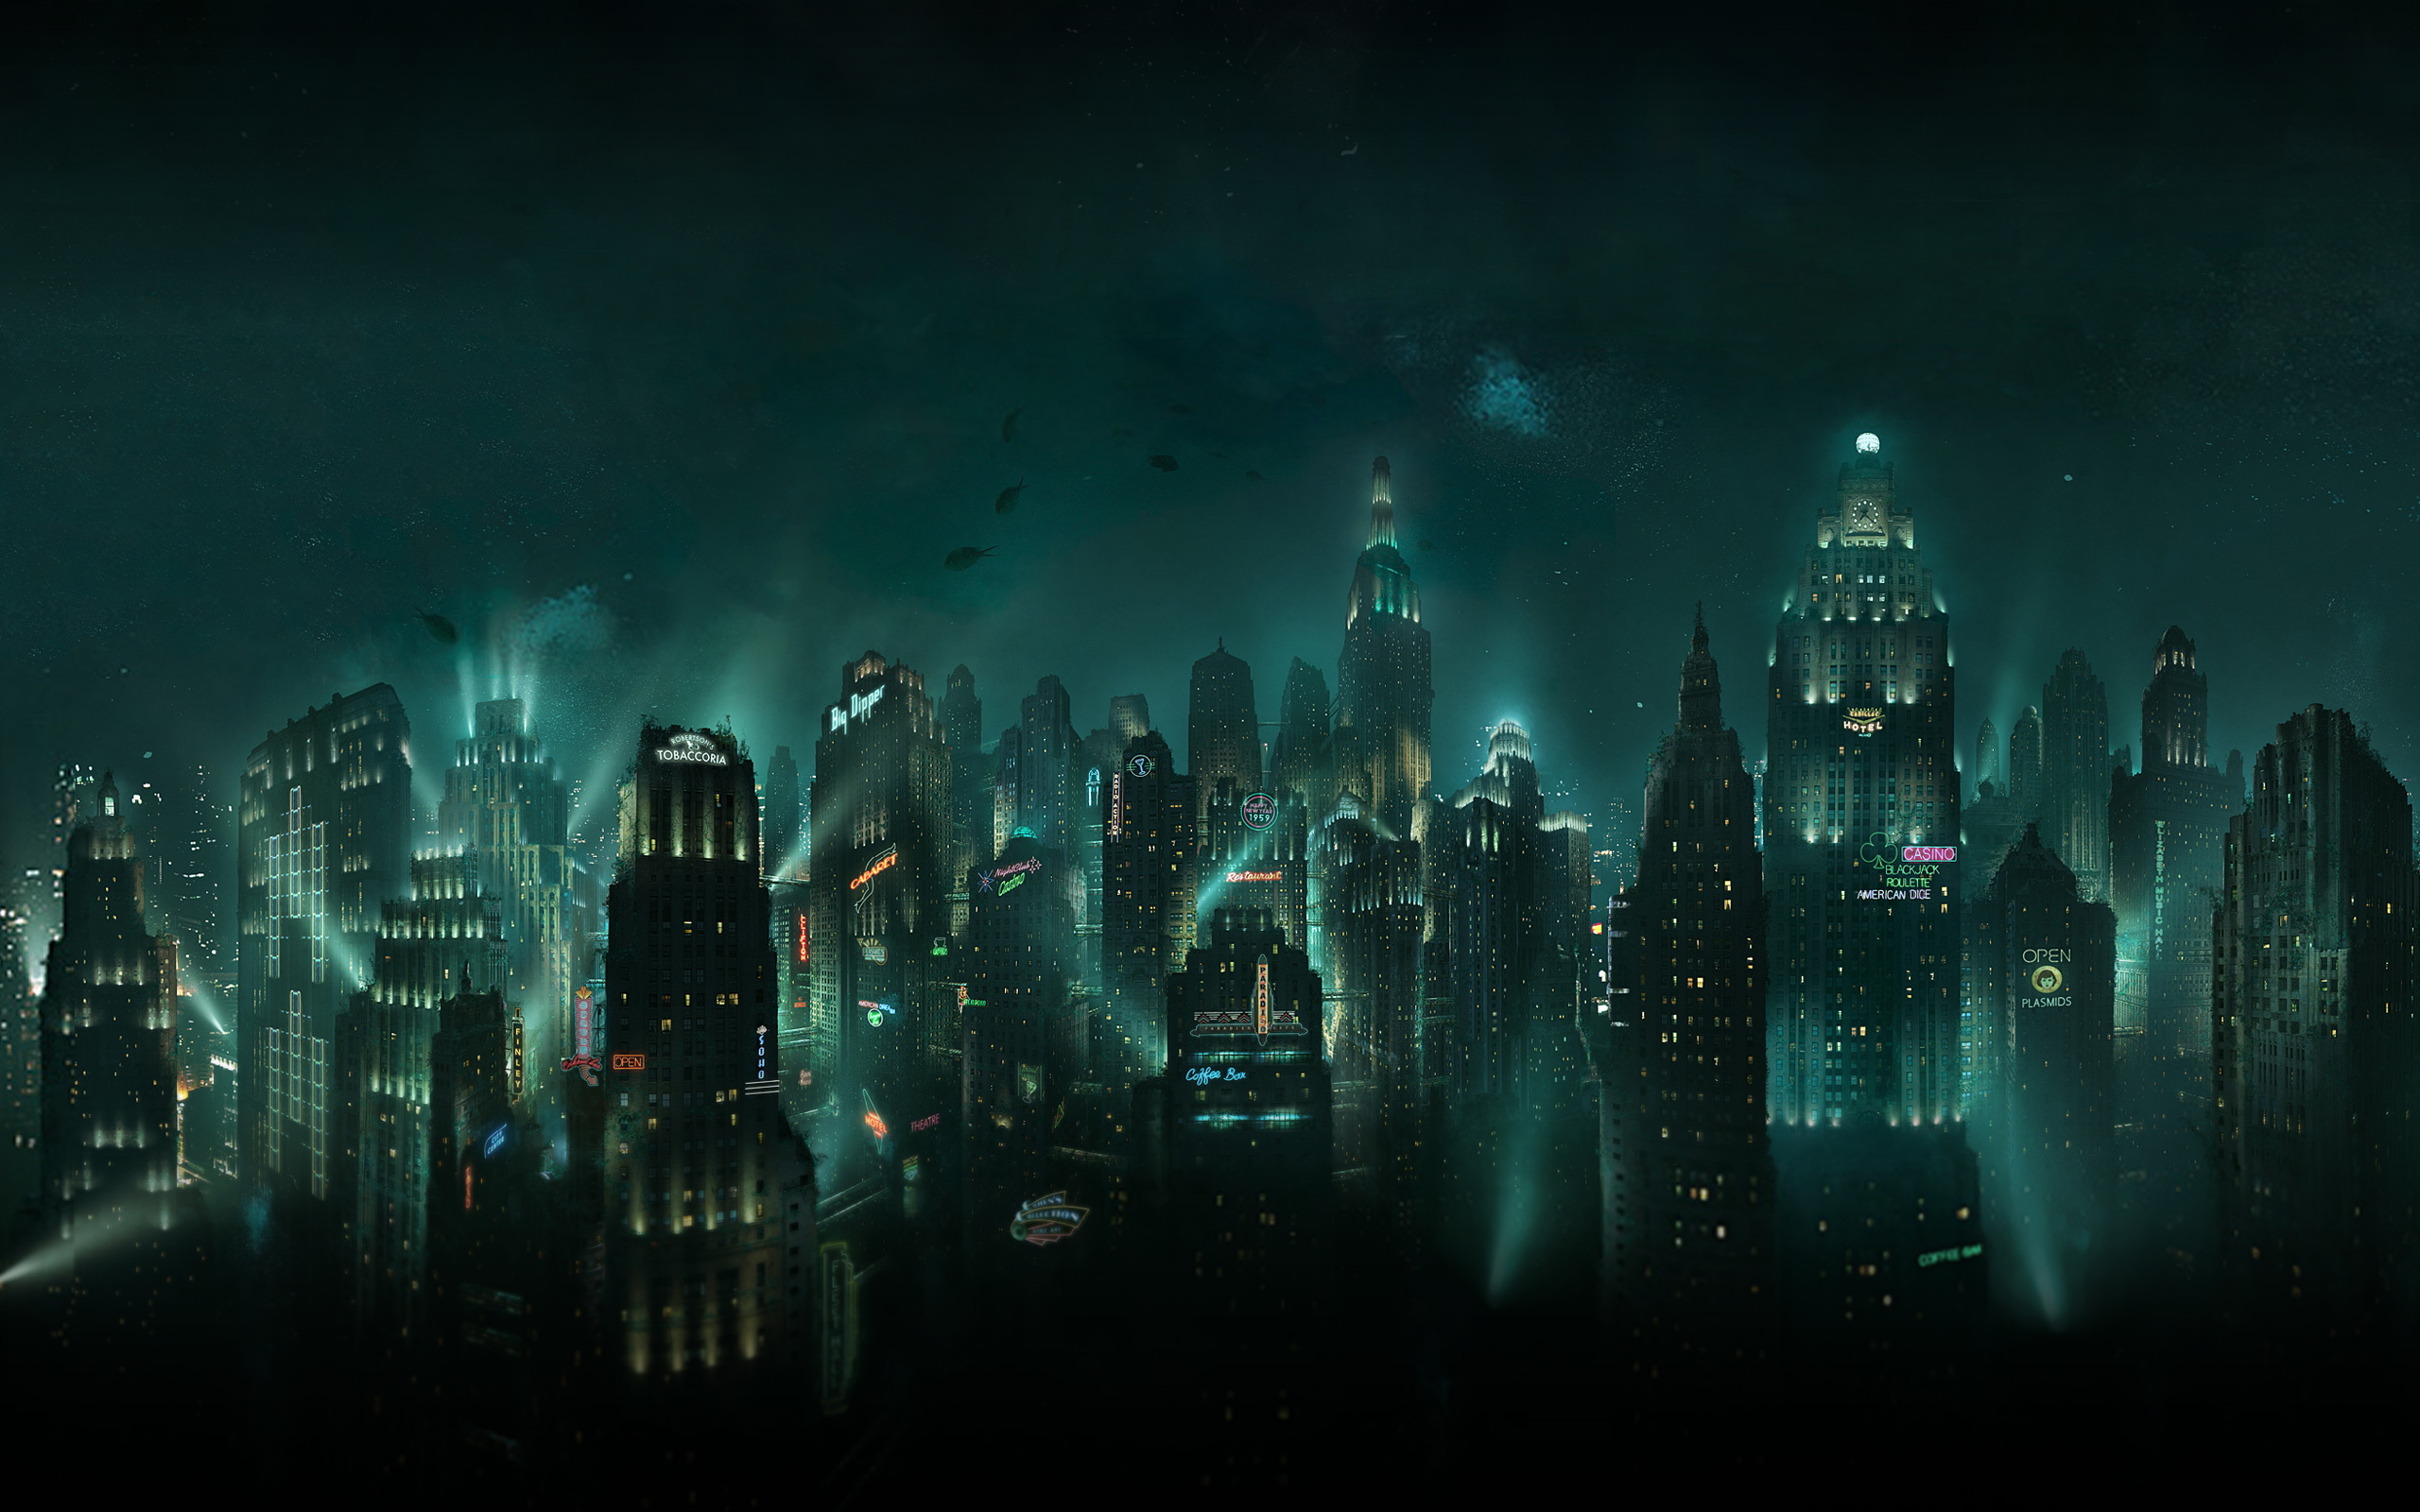 fond d'écran en direct 1080p,jeu d'aventure d'action,ténèbres,ville,compositing numérique,ciel